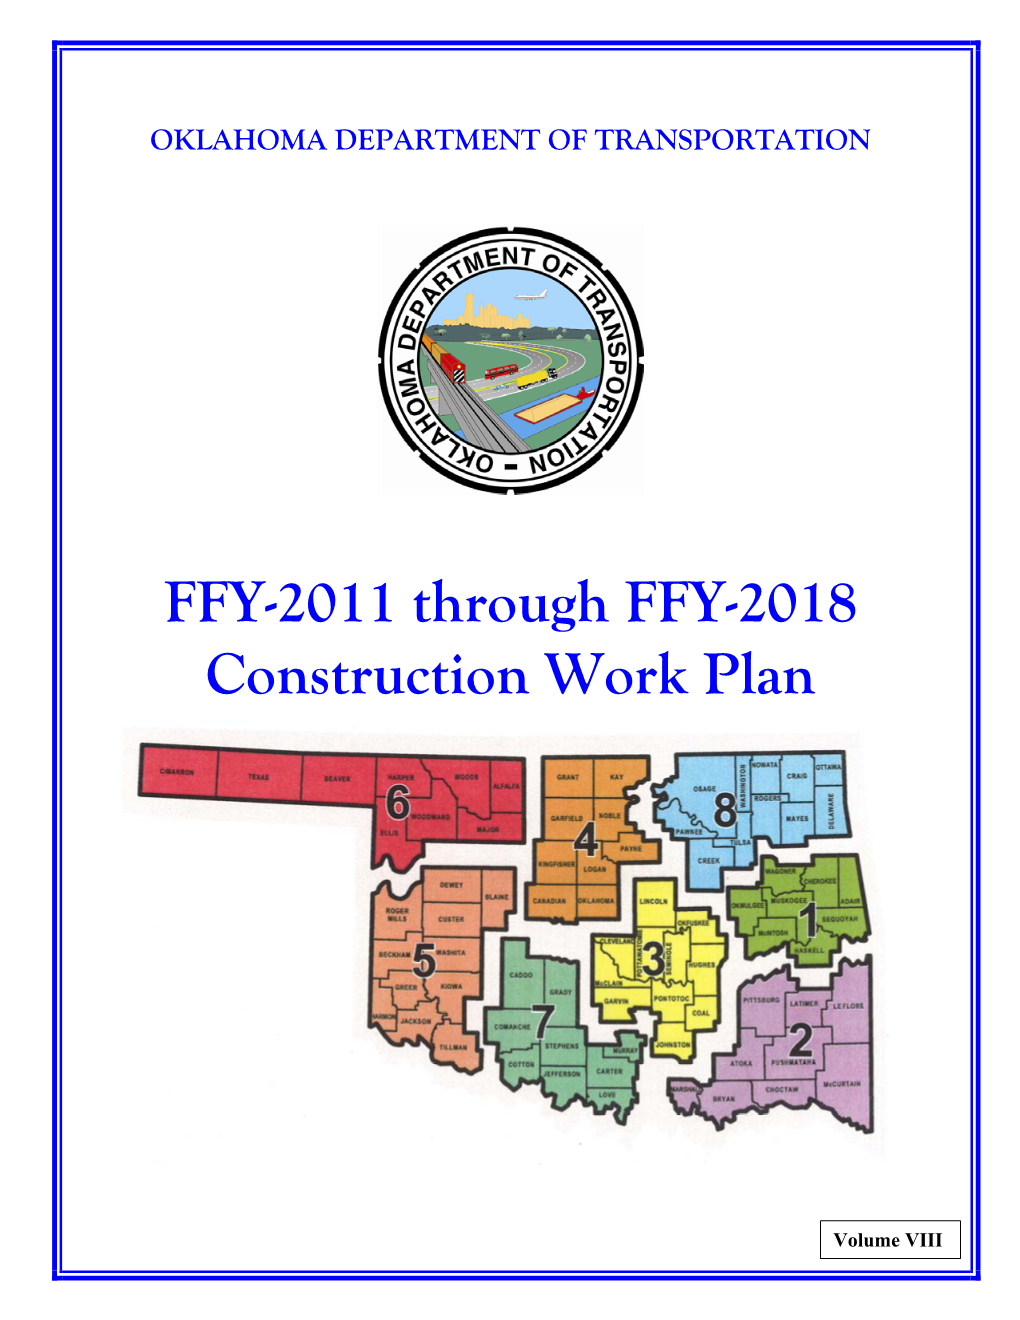 FFY-2011 Through FFY-2018 Construction Work Plan